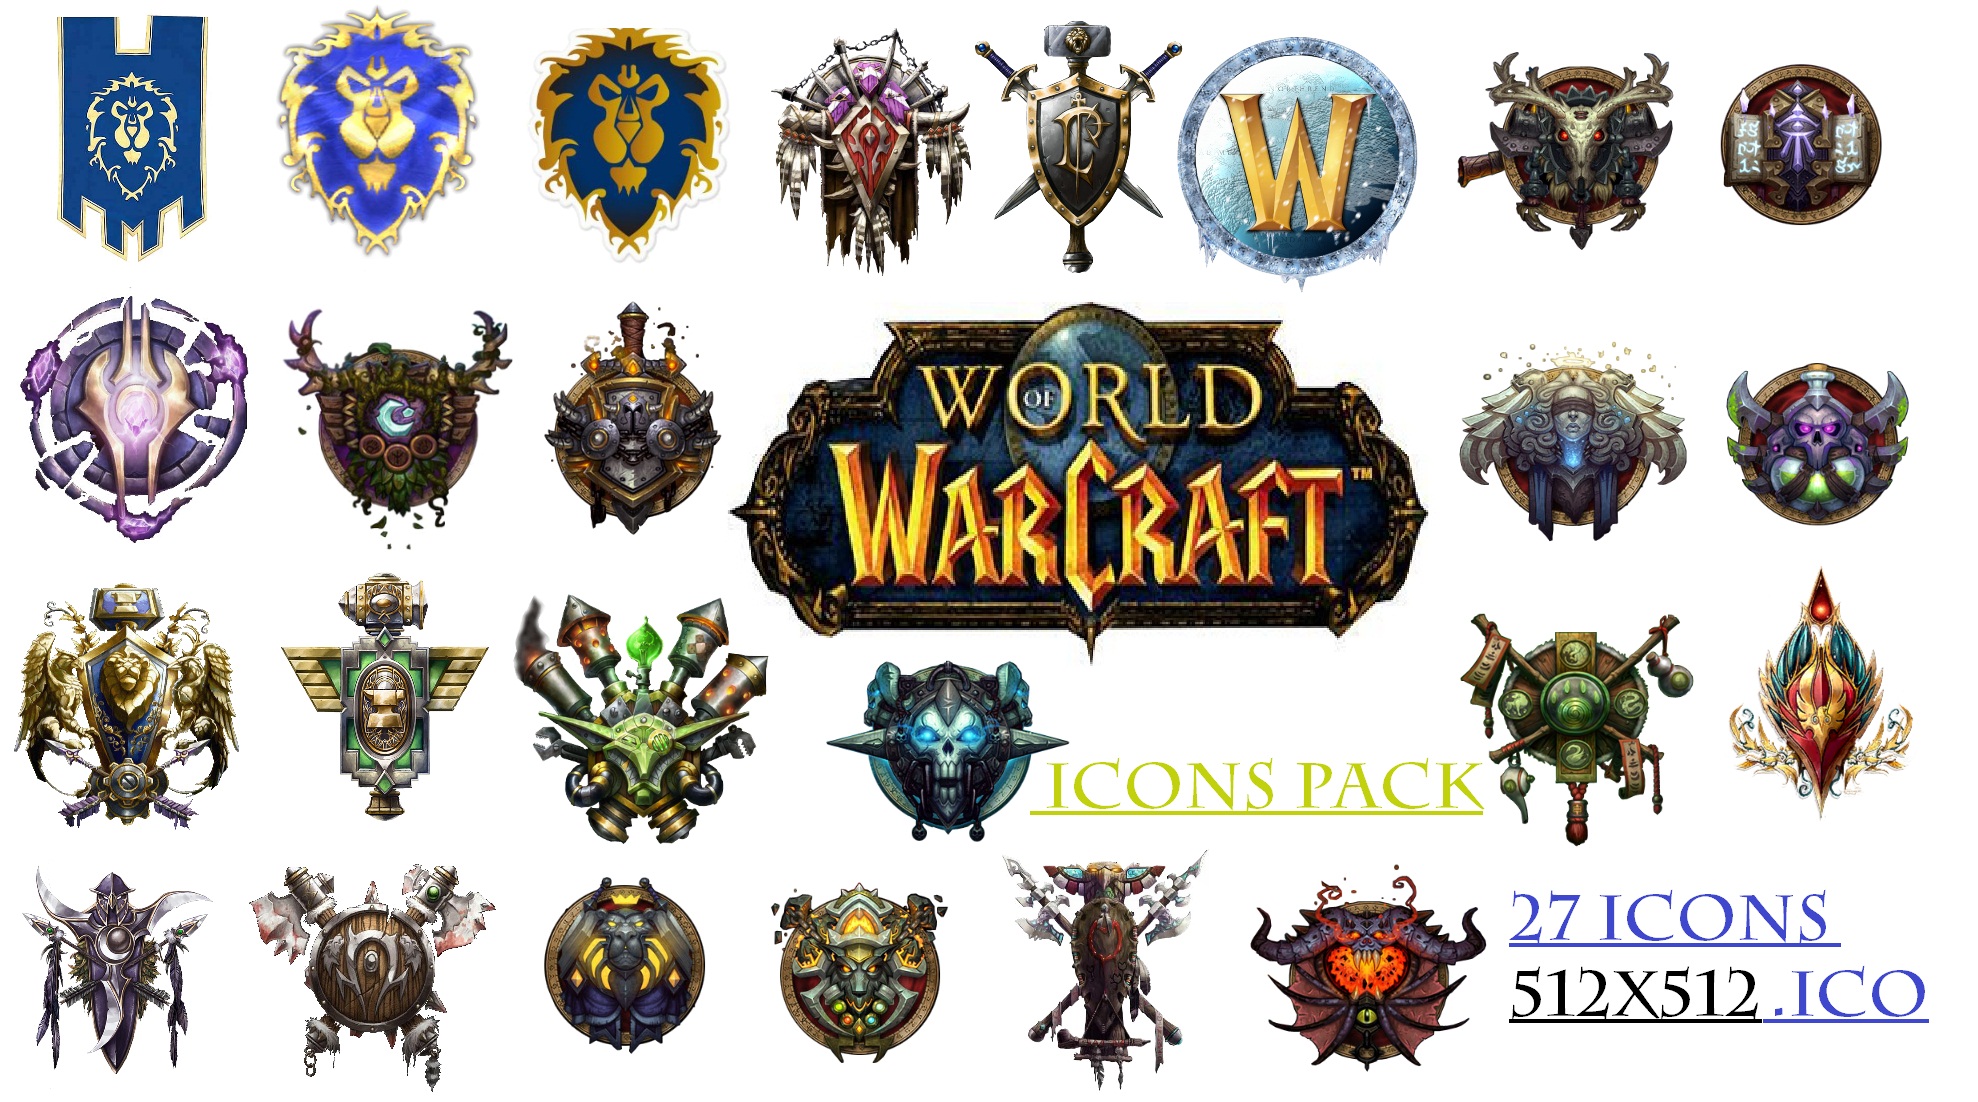 Warcraft icons. Warcraft иконки. Wow иконка. World of Warcraft логотип. Ярлык World of Warcraft.